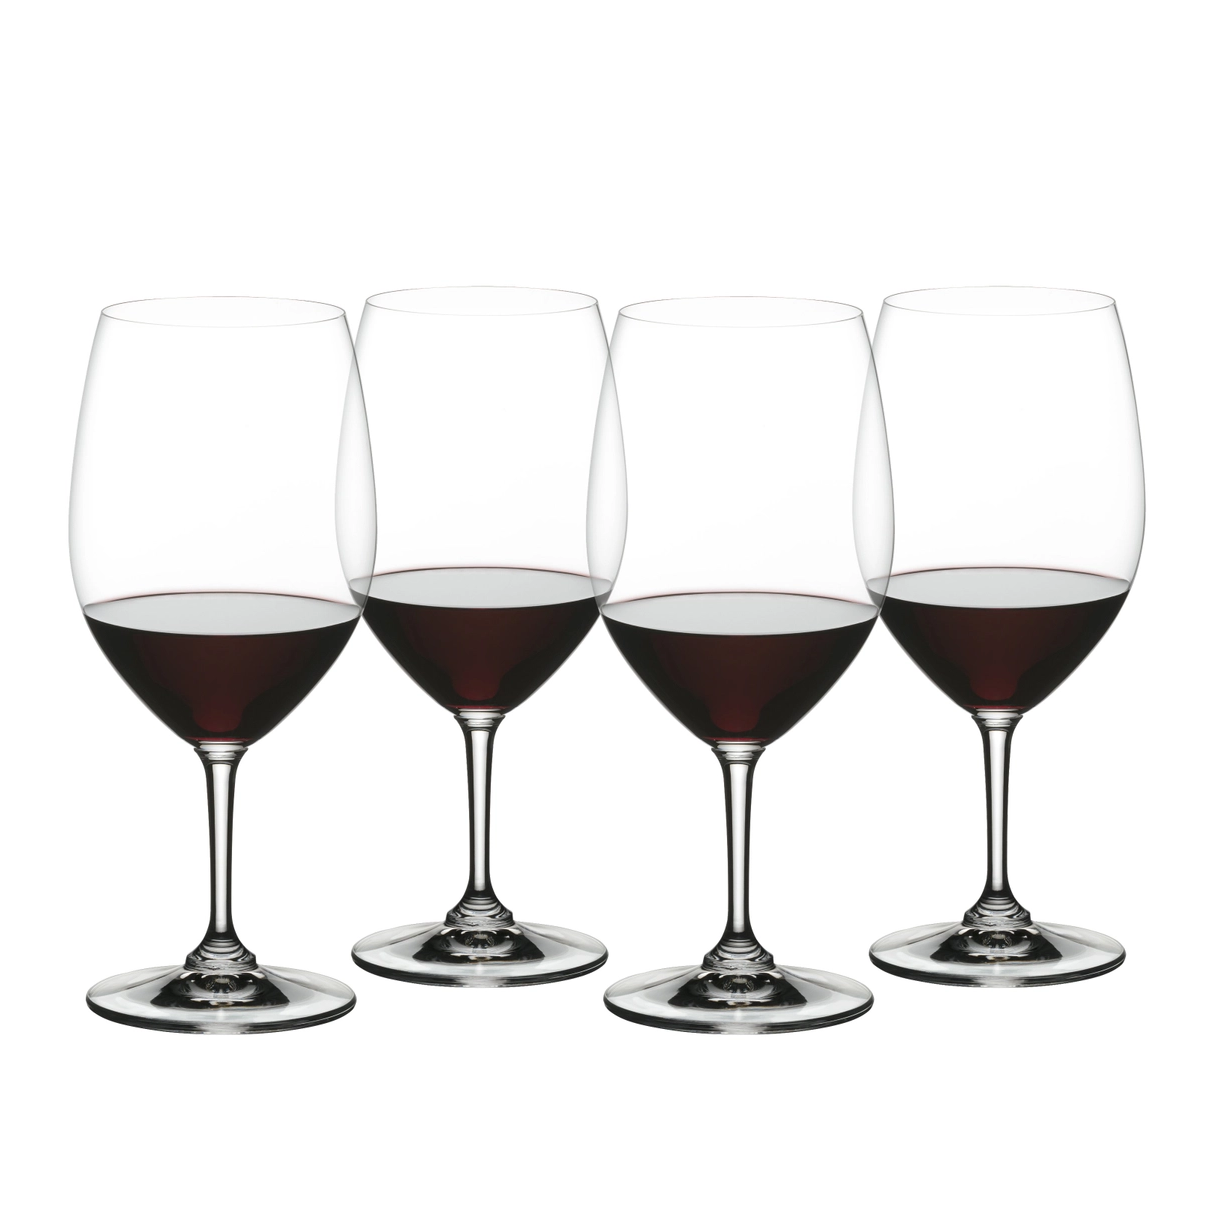 22oz Grand Epicurean Bordeaux Wine Glasses (Set of 4)